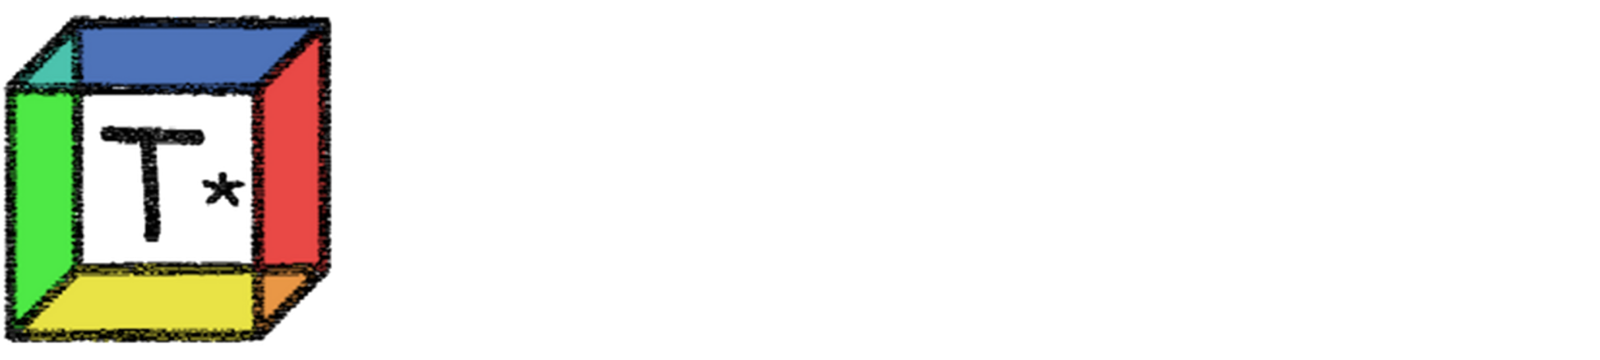 Tanakano*